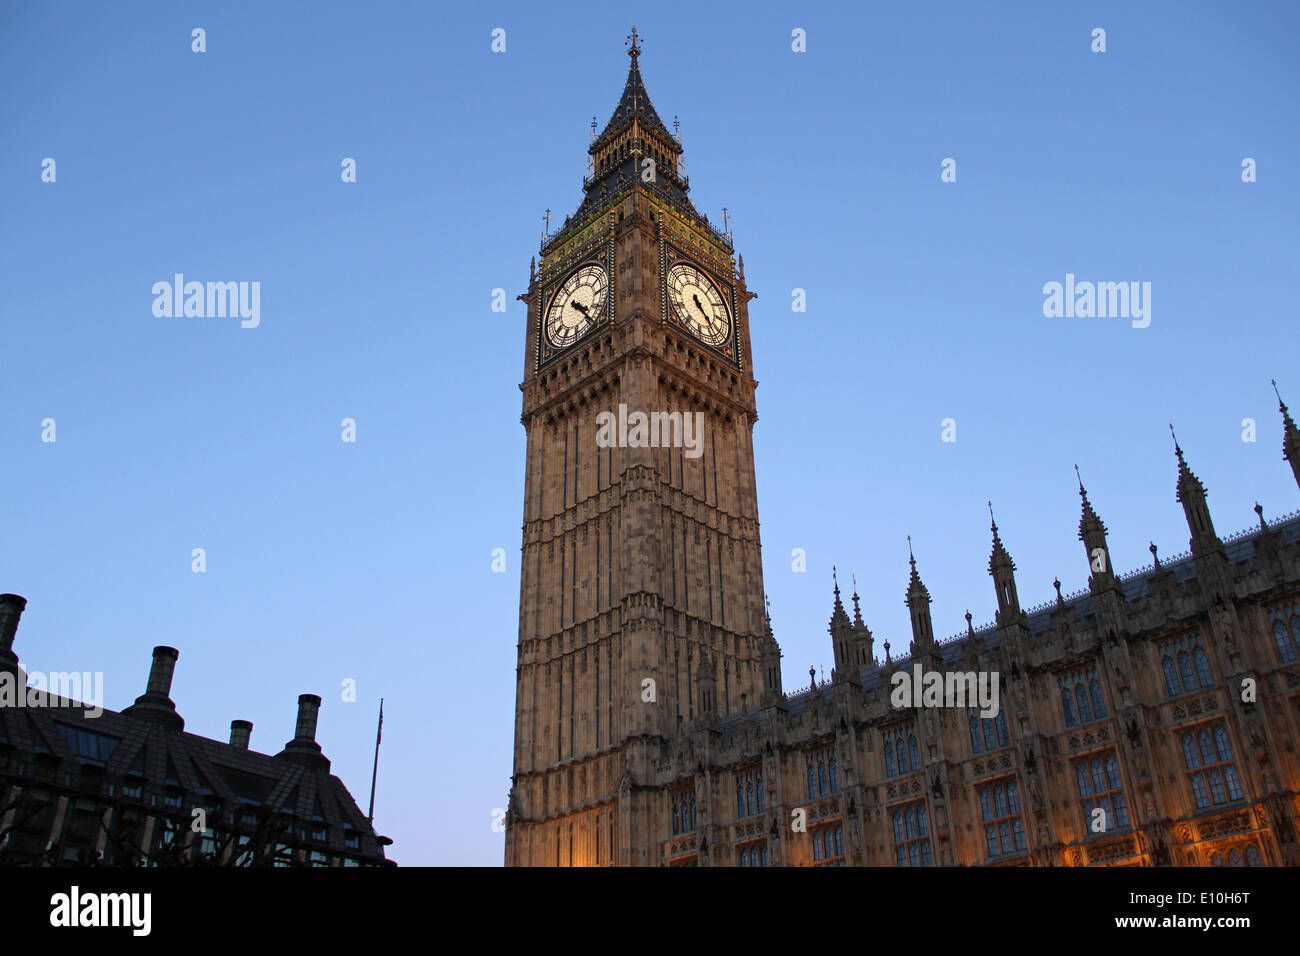 Londres : Big Ben (Elizabeth Tower) du côté ouest Banque D'Images